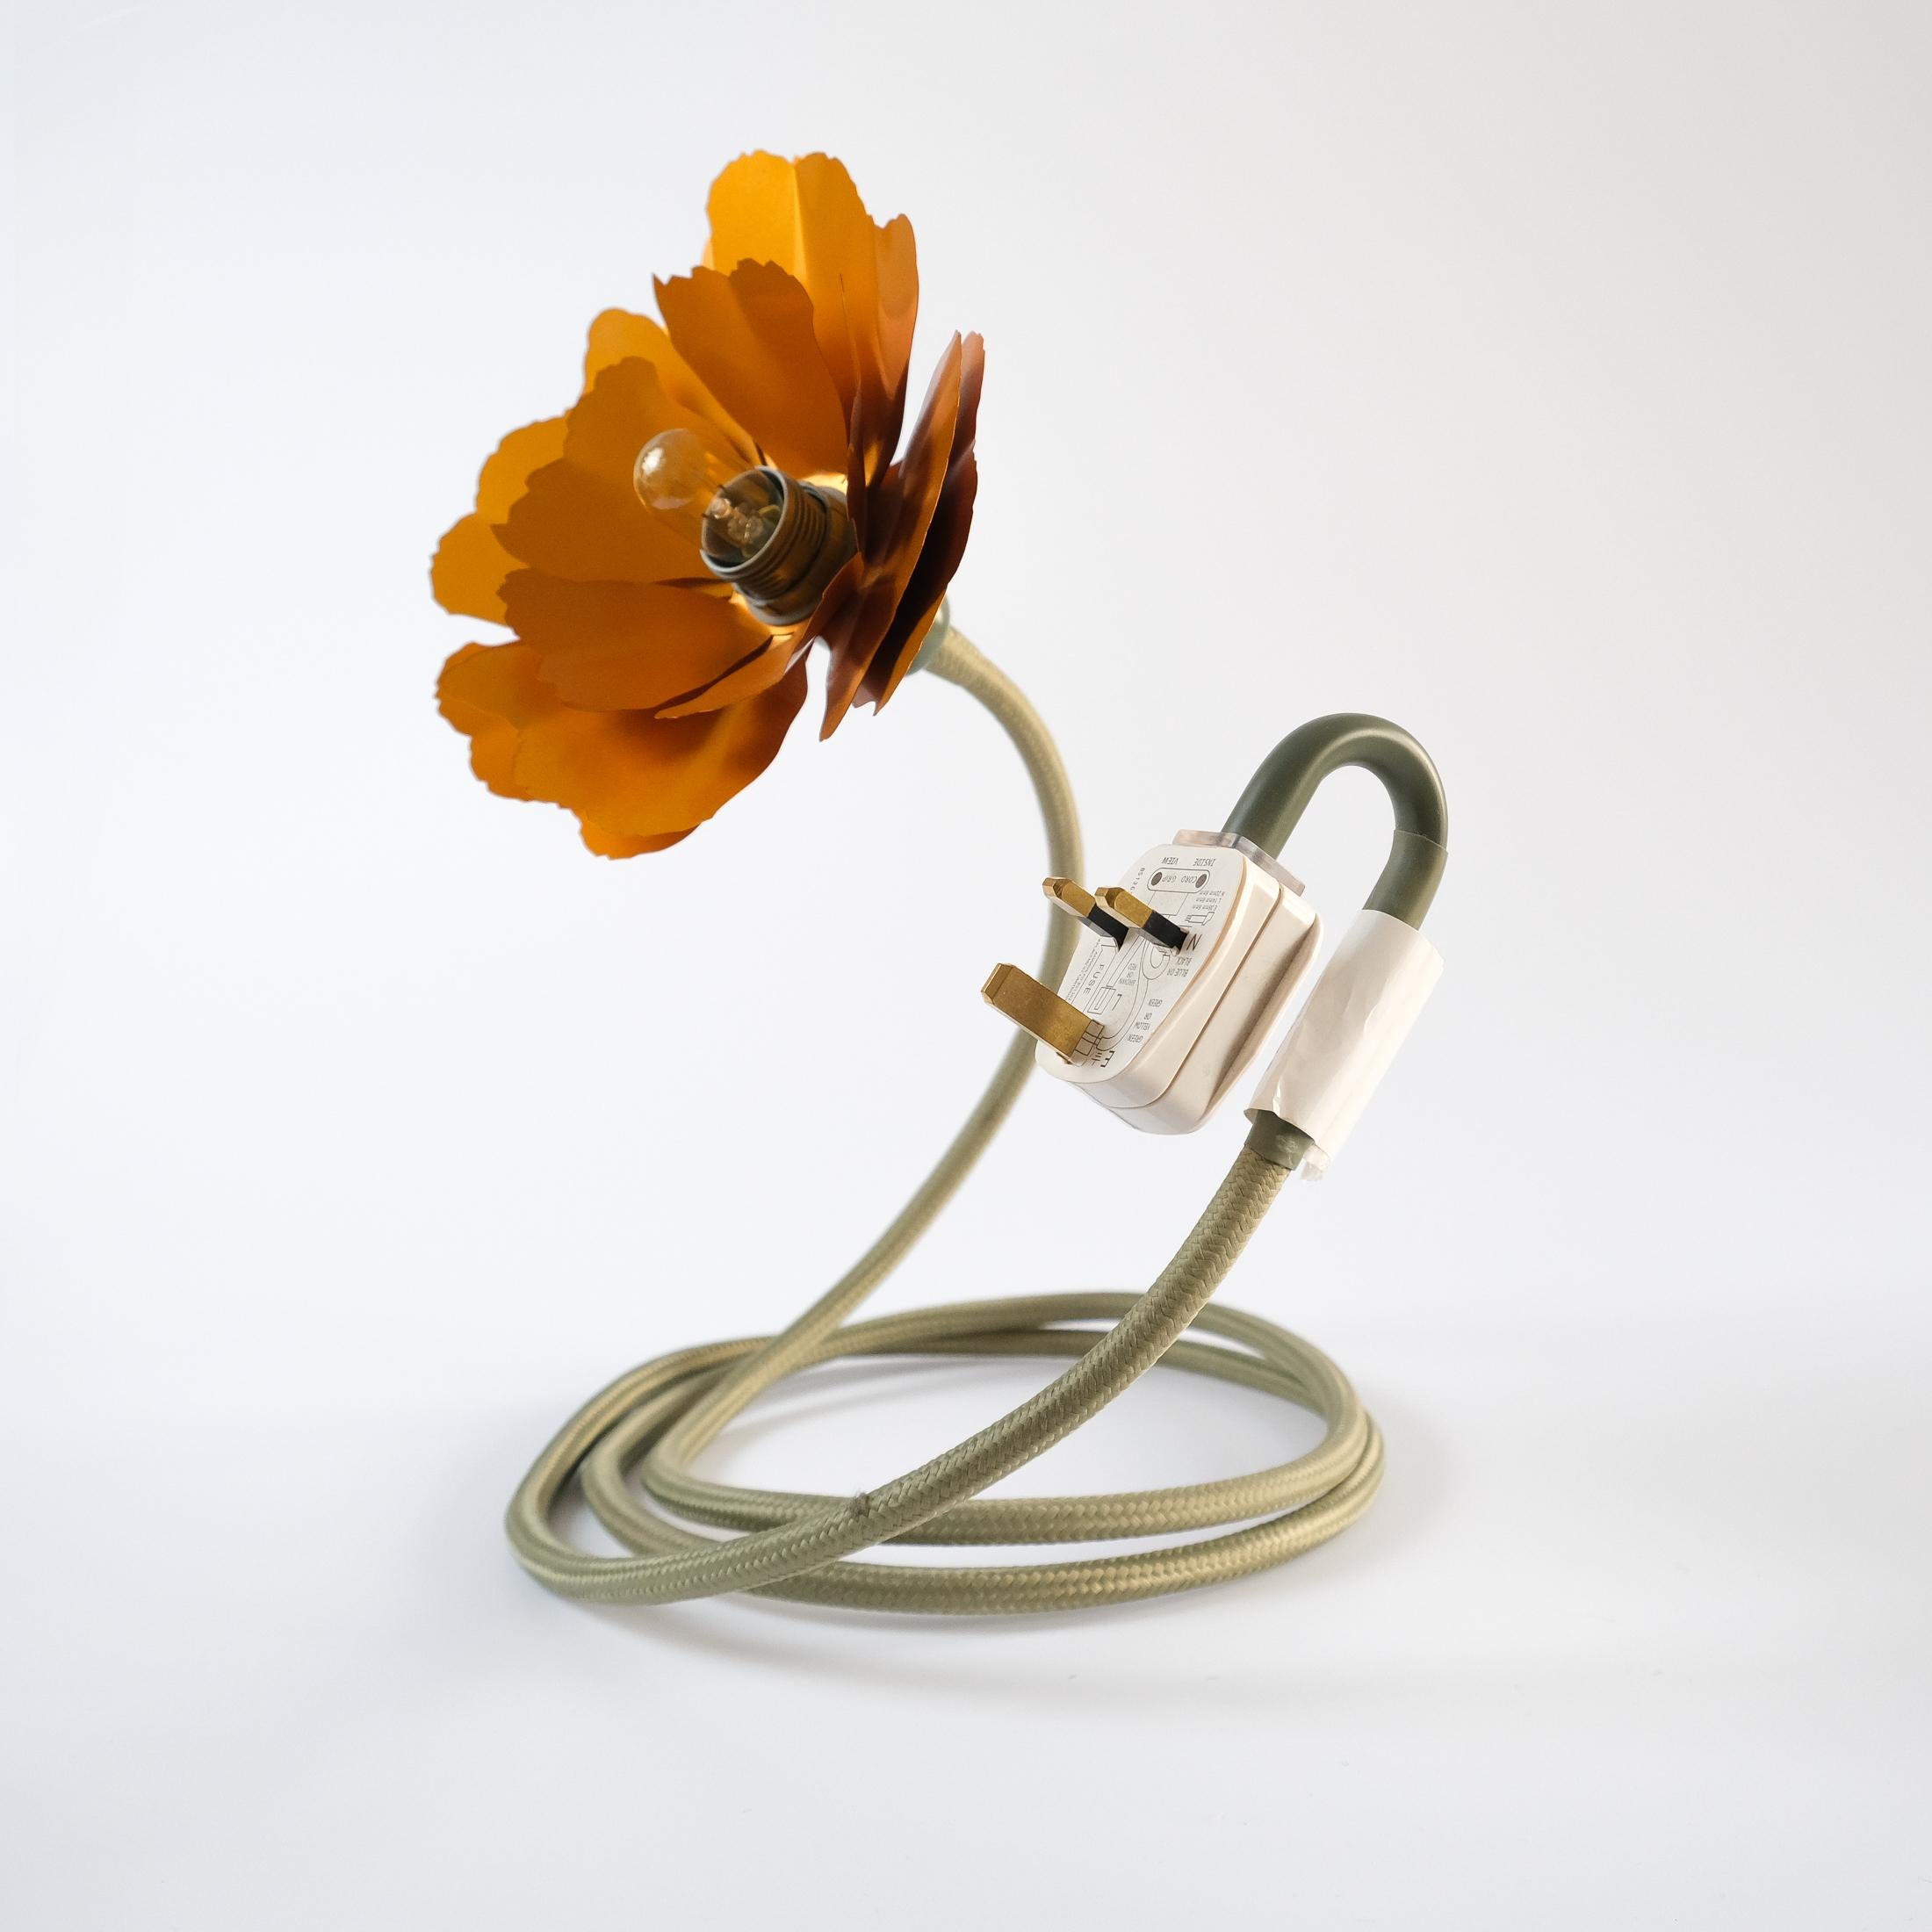 Helena Christensen's Flexible Flower Lamp for Habitat “V.I.P” Collection, 2004 For Sale 8